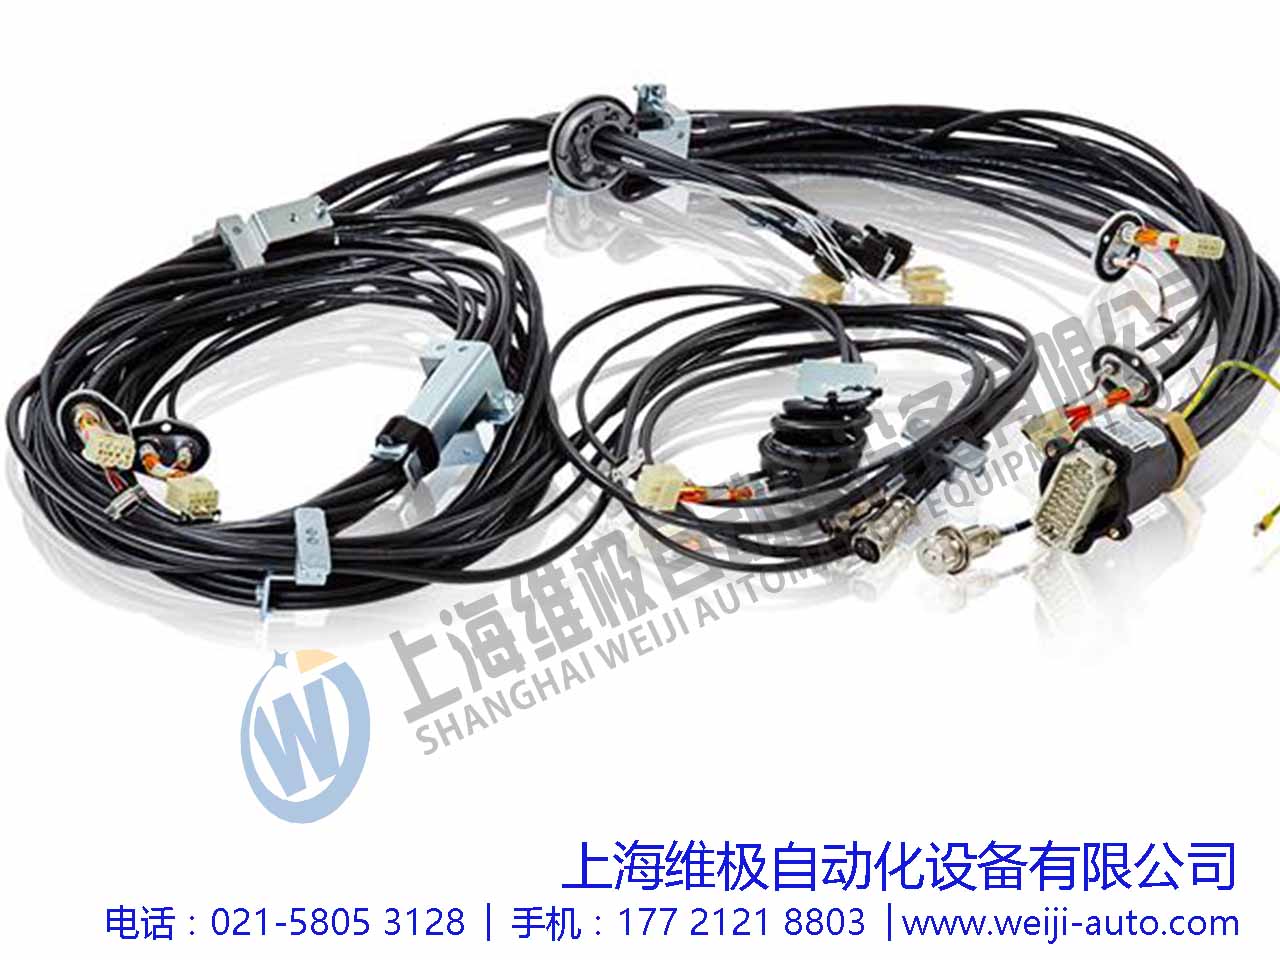 3HAC024386-001, IRB6650S本体电缆